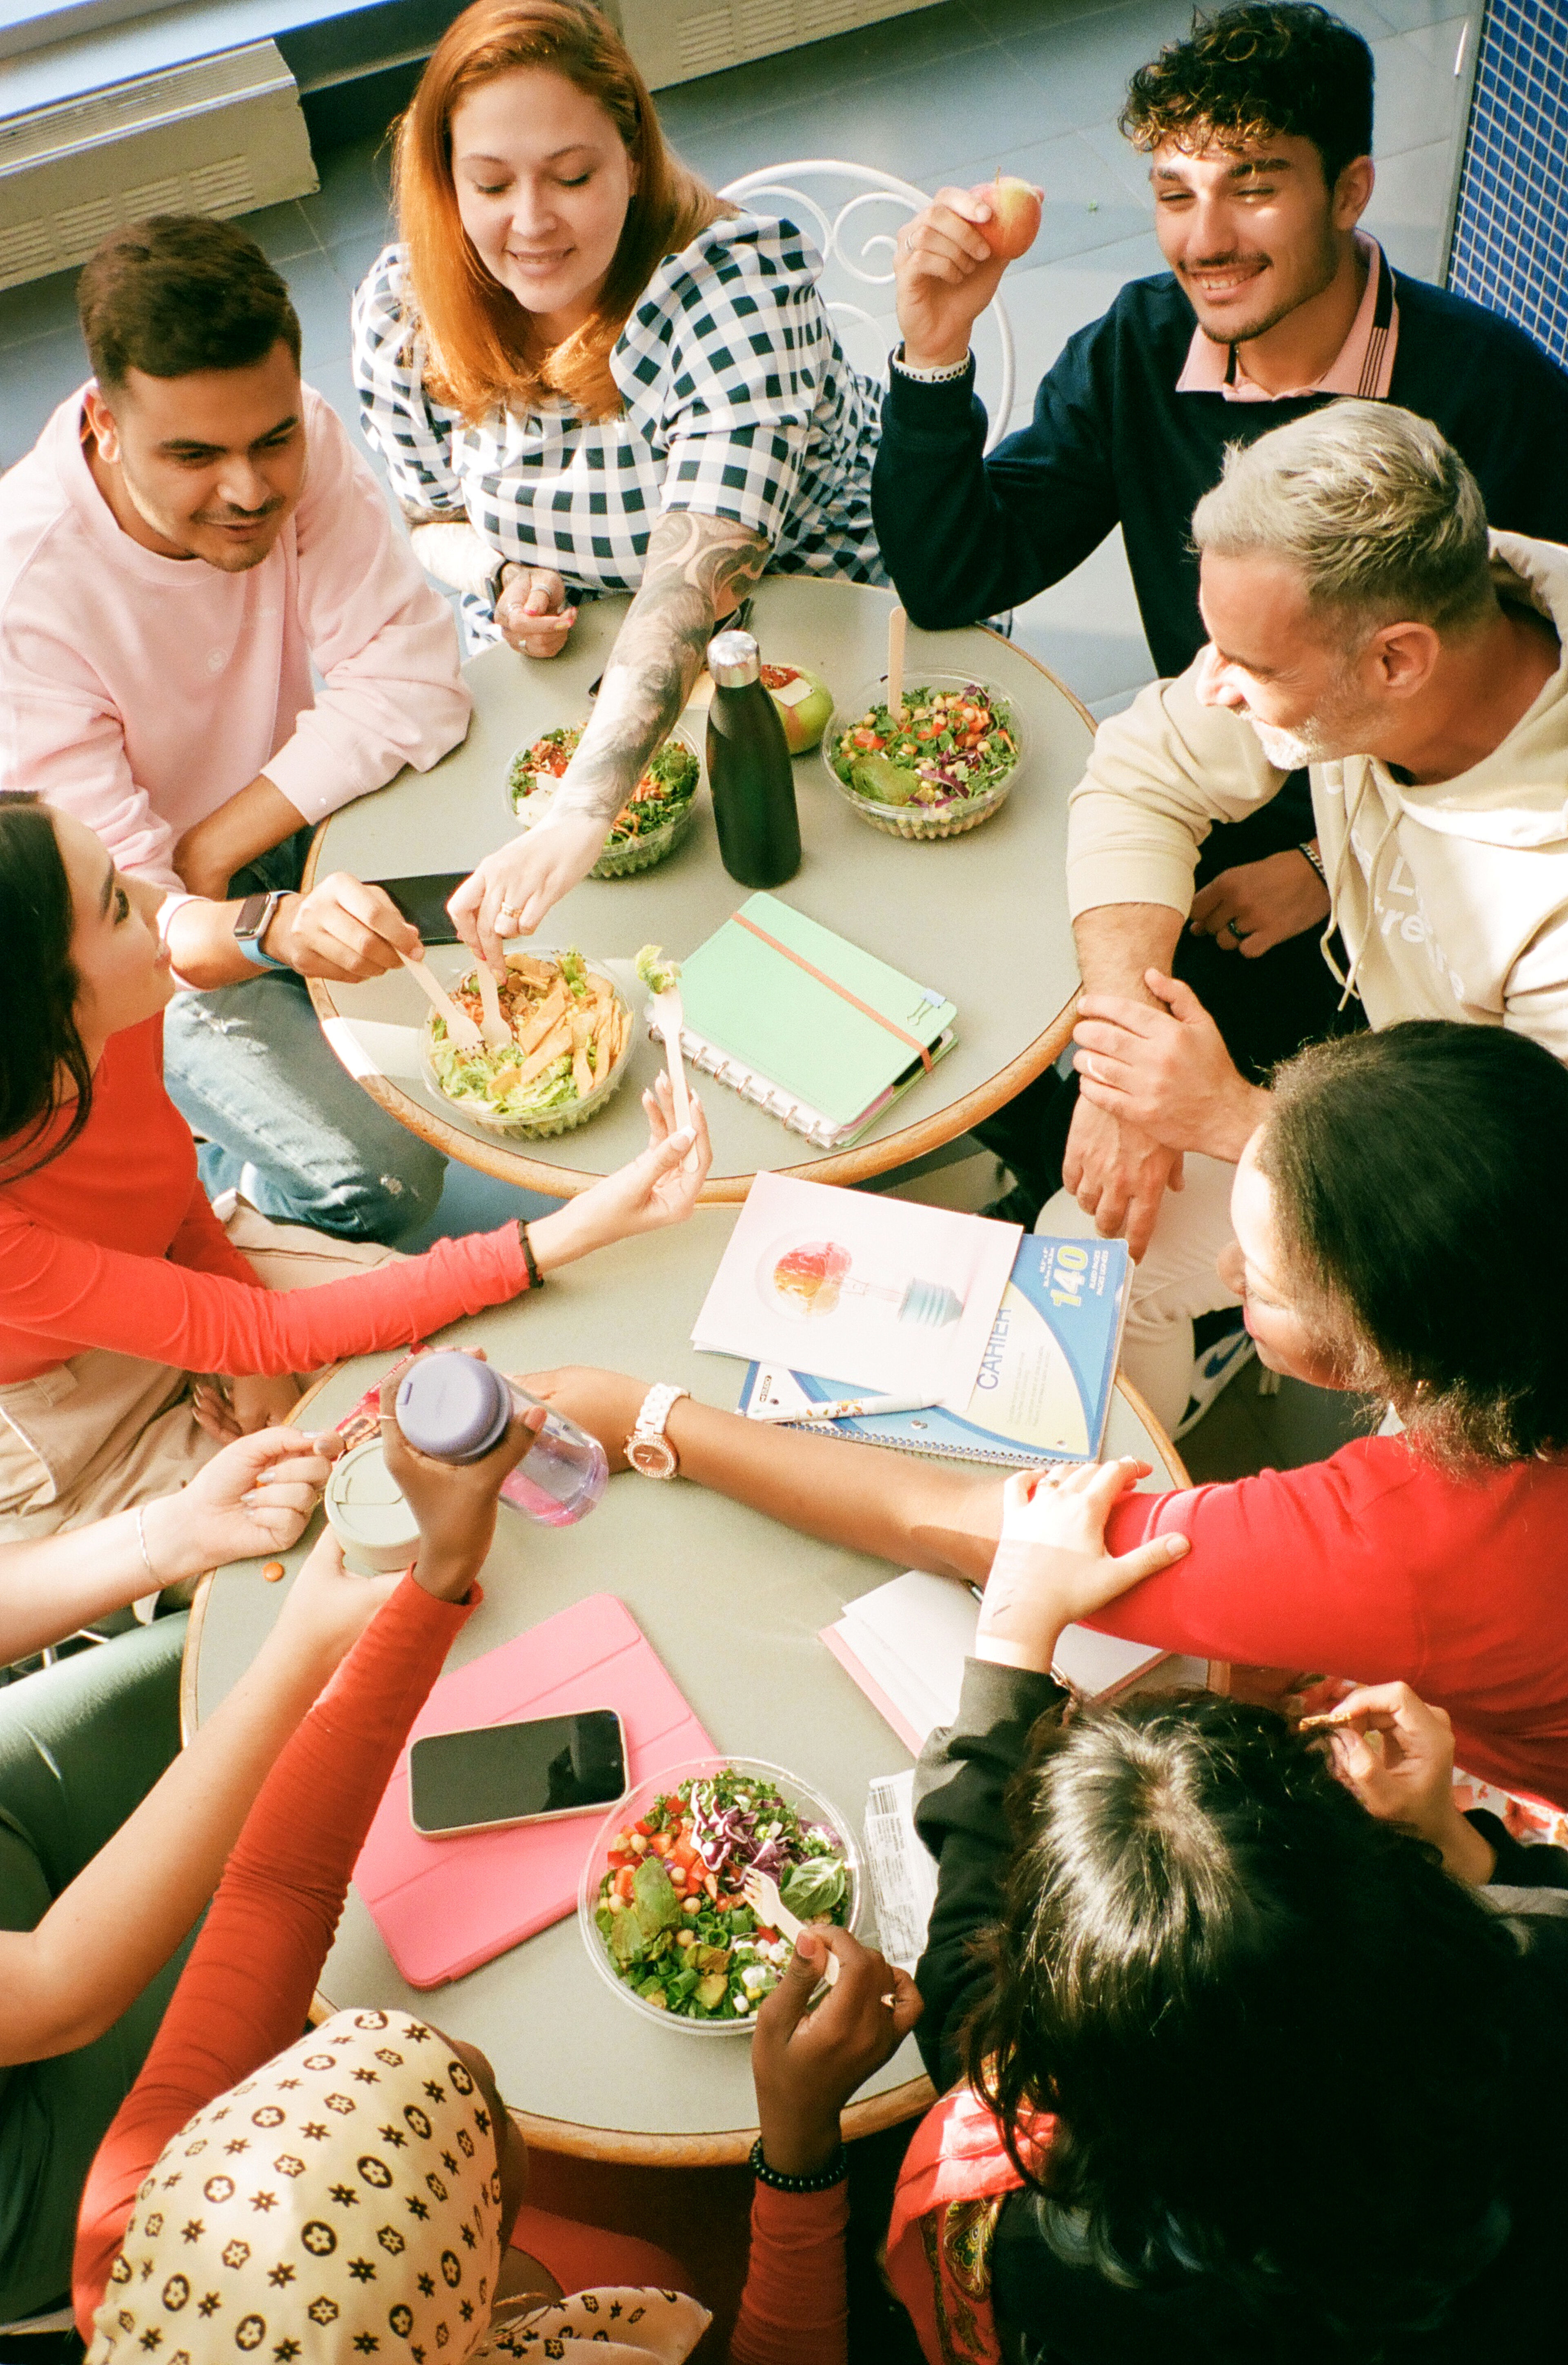 Un groupe hétérogène de personnes de différents âges discute autour d'une table garnie de salades saines, de livres et de smartphones.